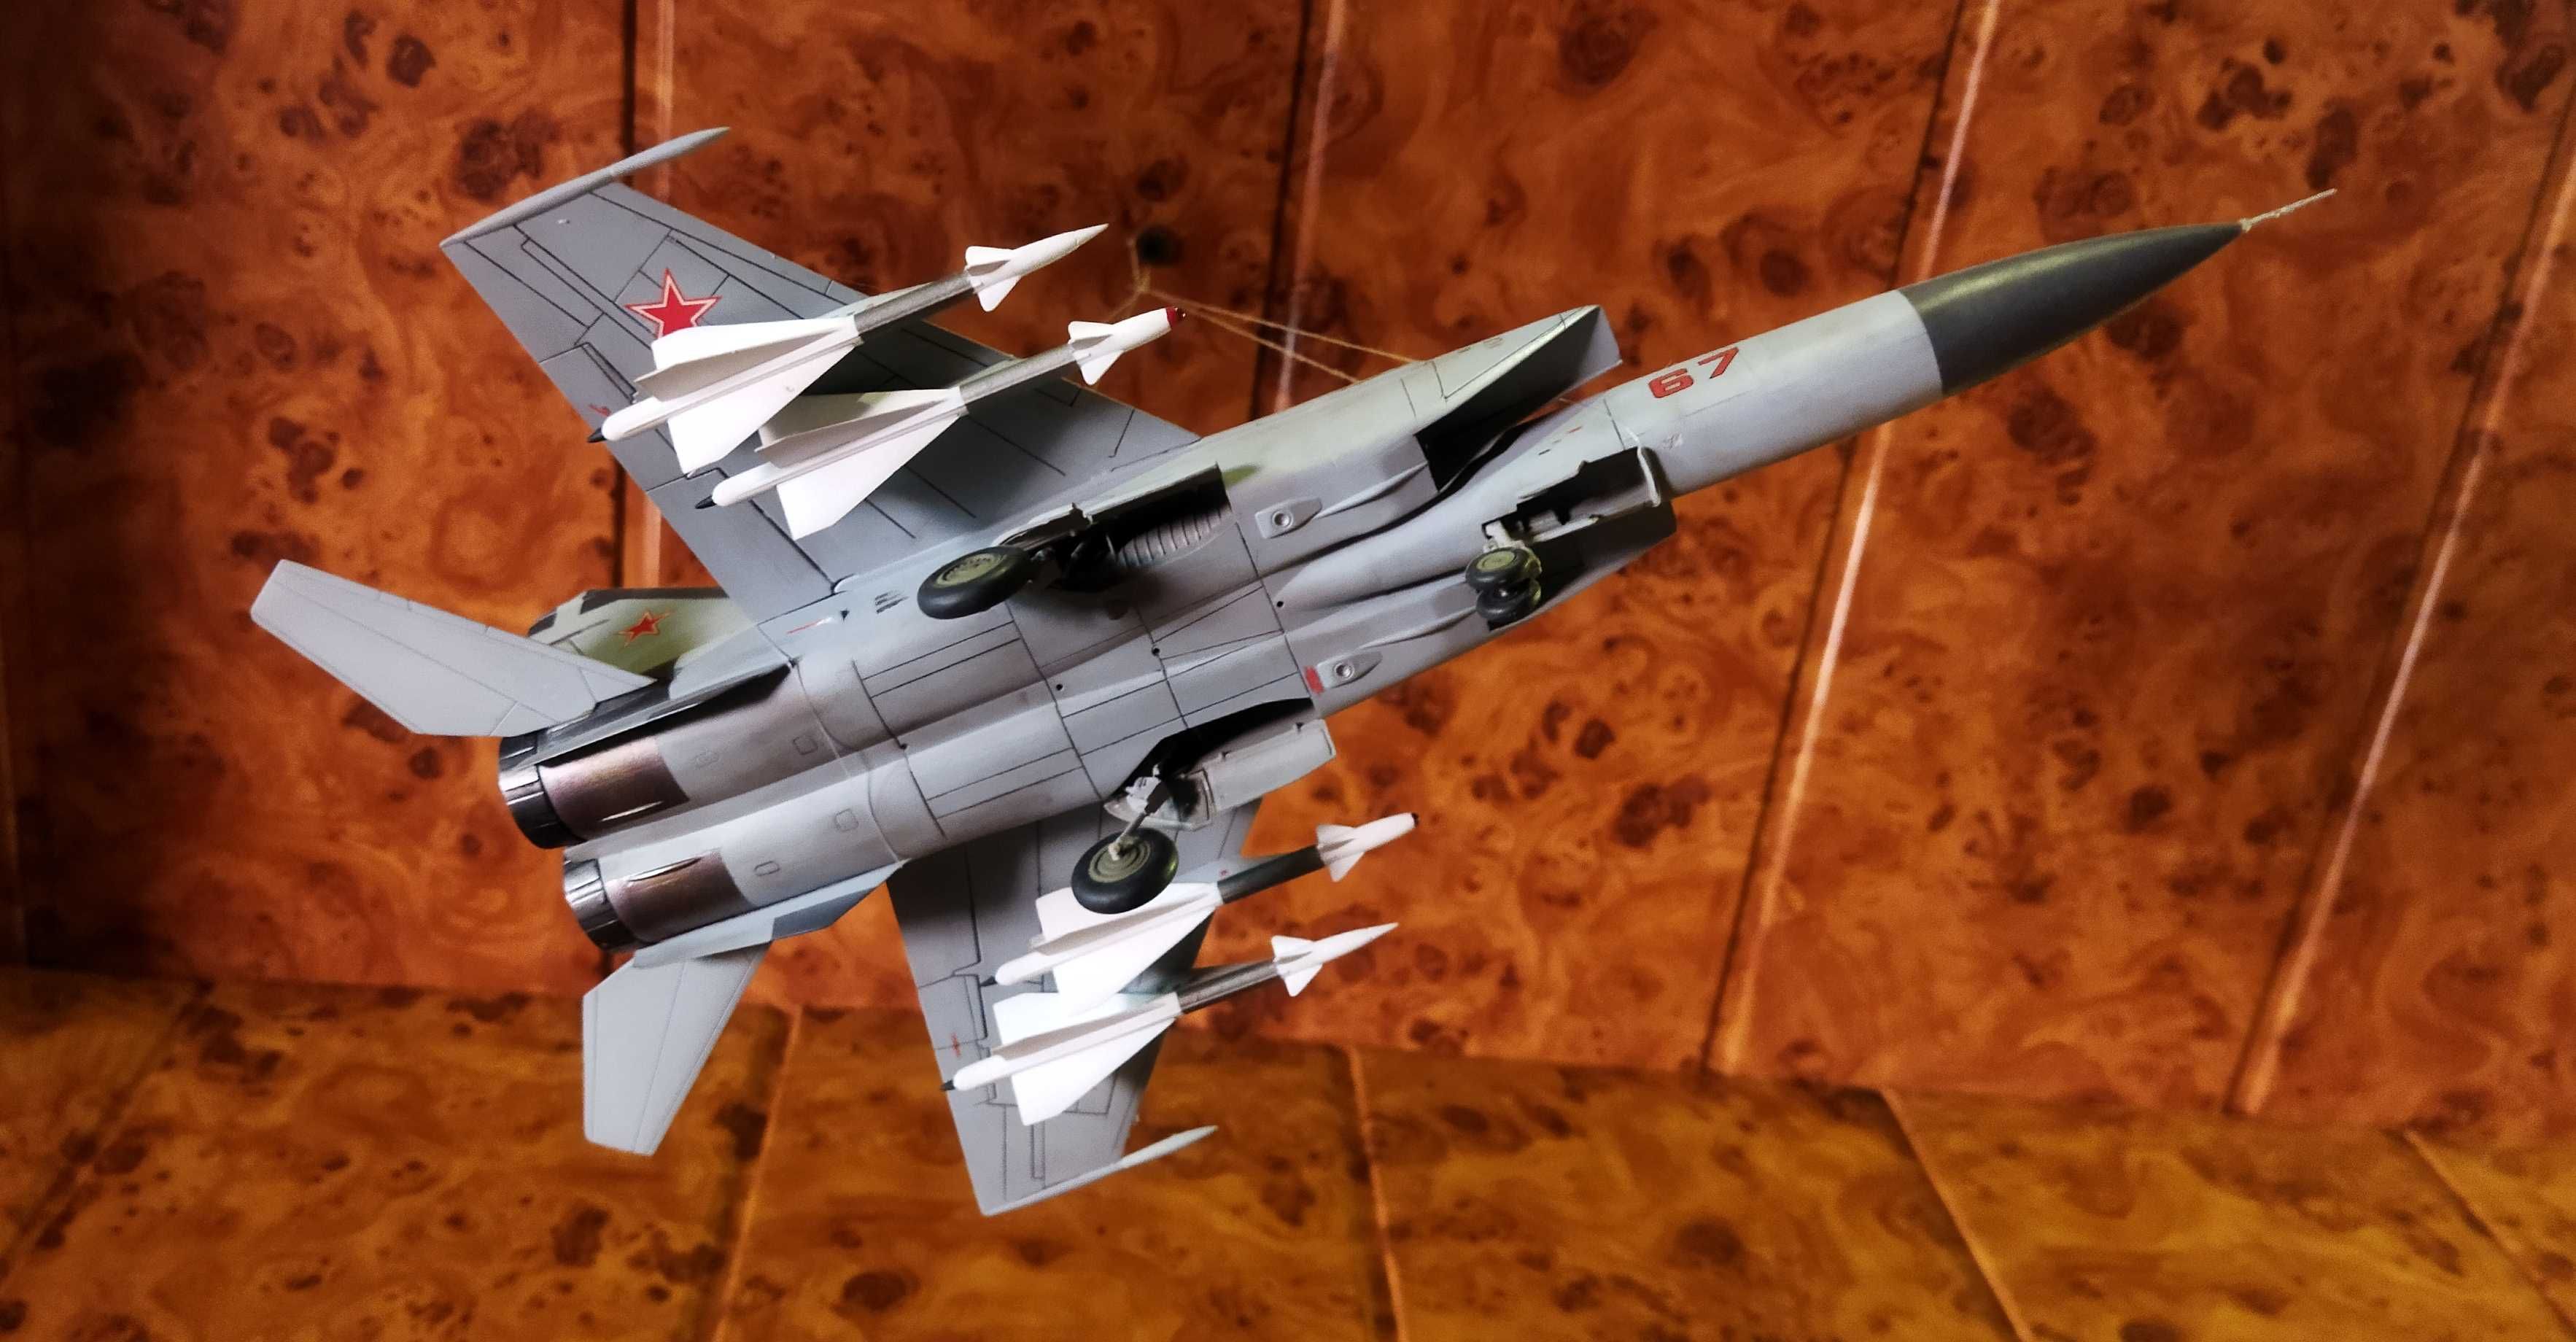 подарочная модель самолета МиГ-25 супер турбо!